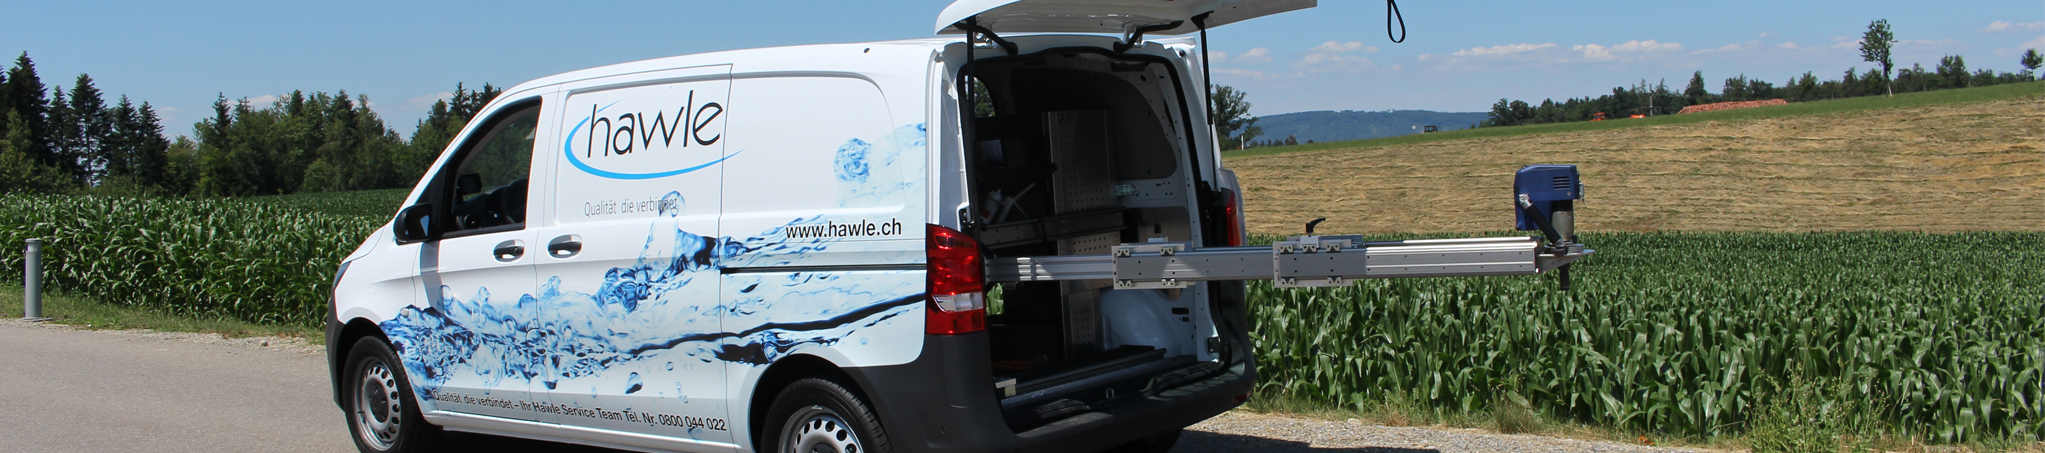 Aufnahme eines Fahrzeuges mit Beschriftung Hawle Armaturen AG als Headerbild für die Website.